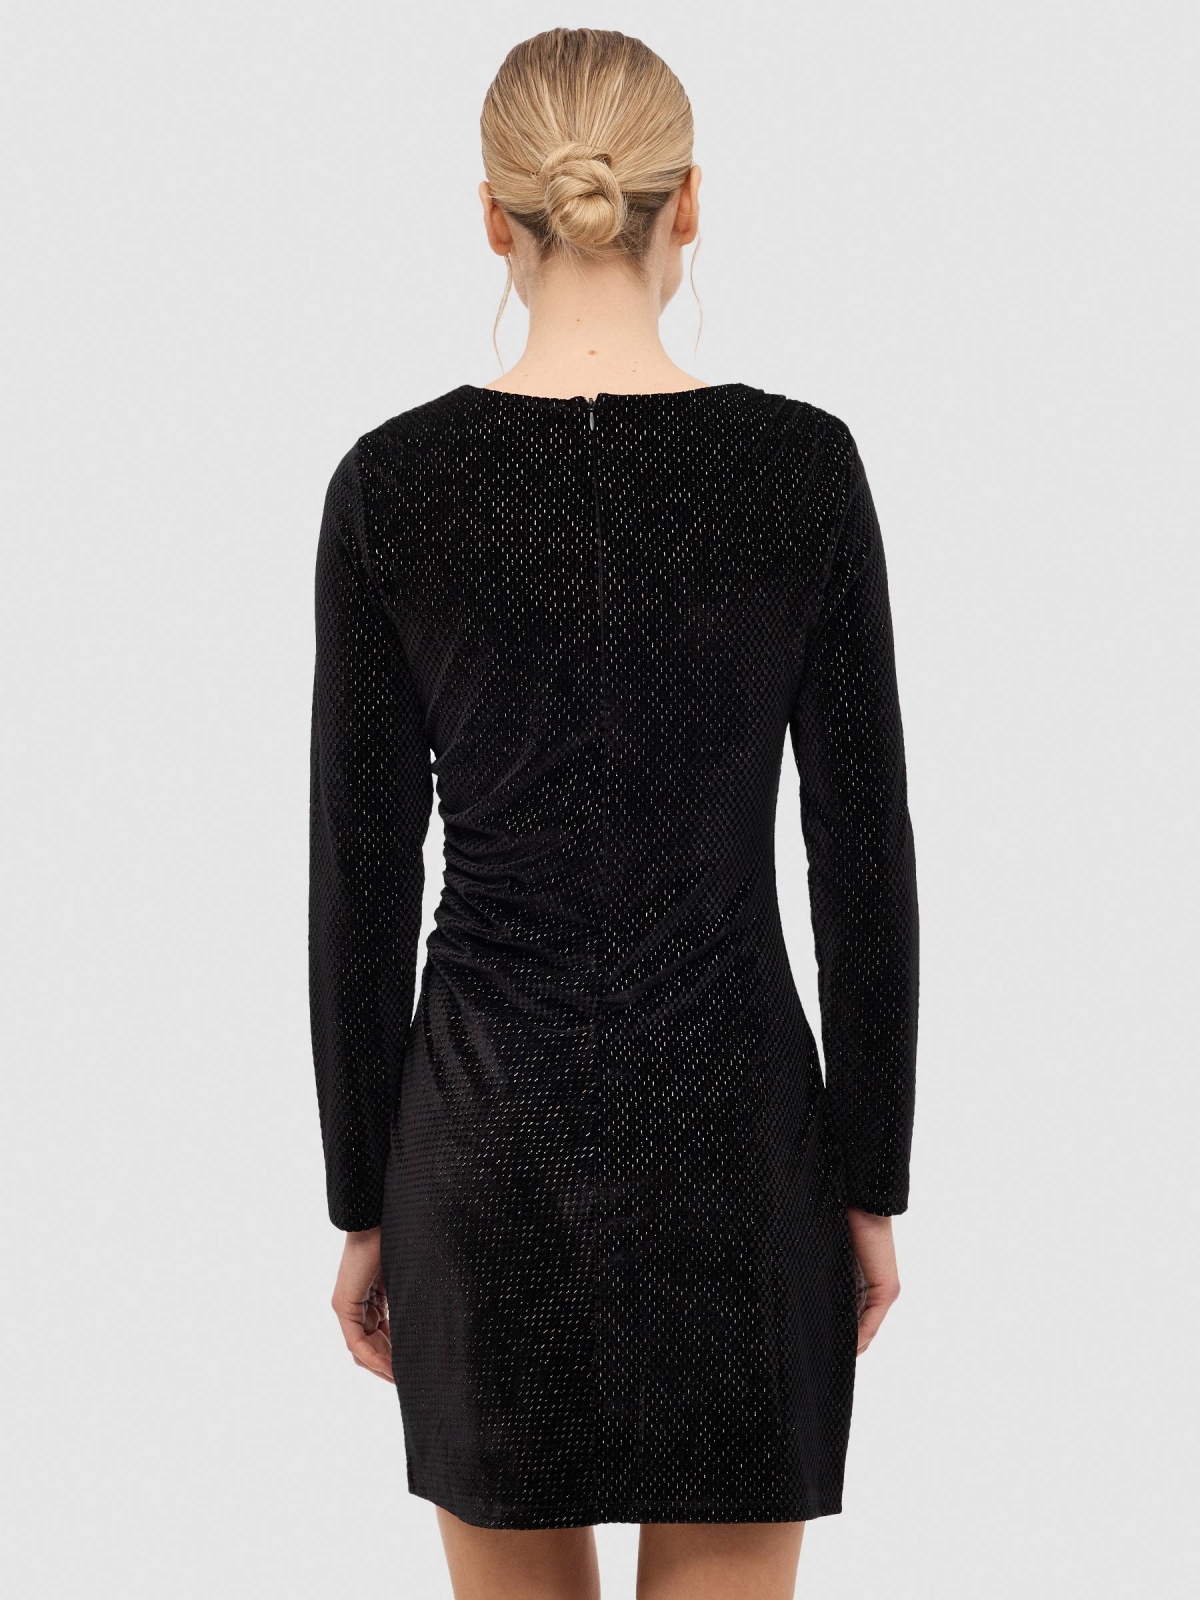 Mini velvet ruffled dress black middle back view